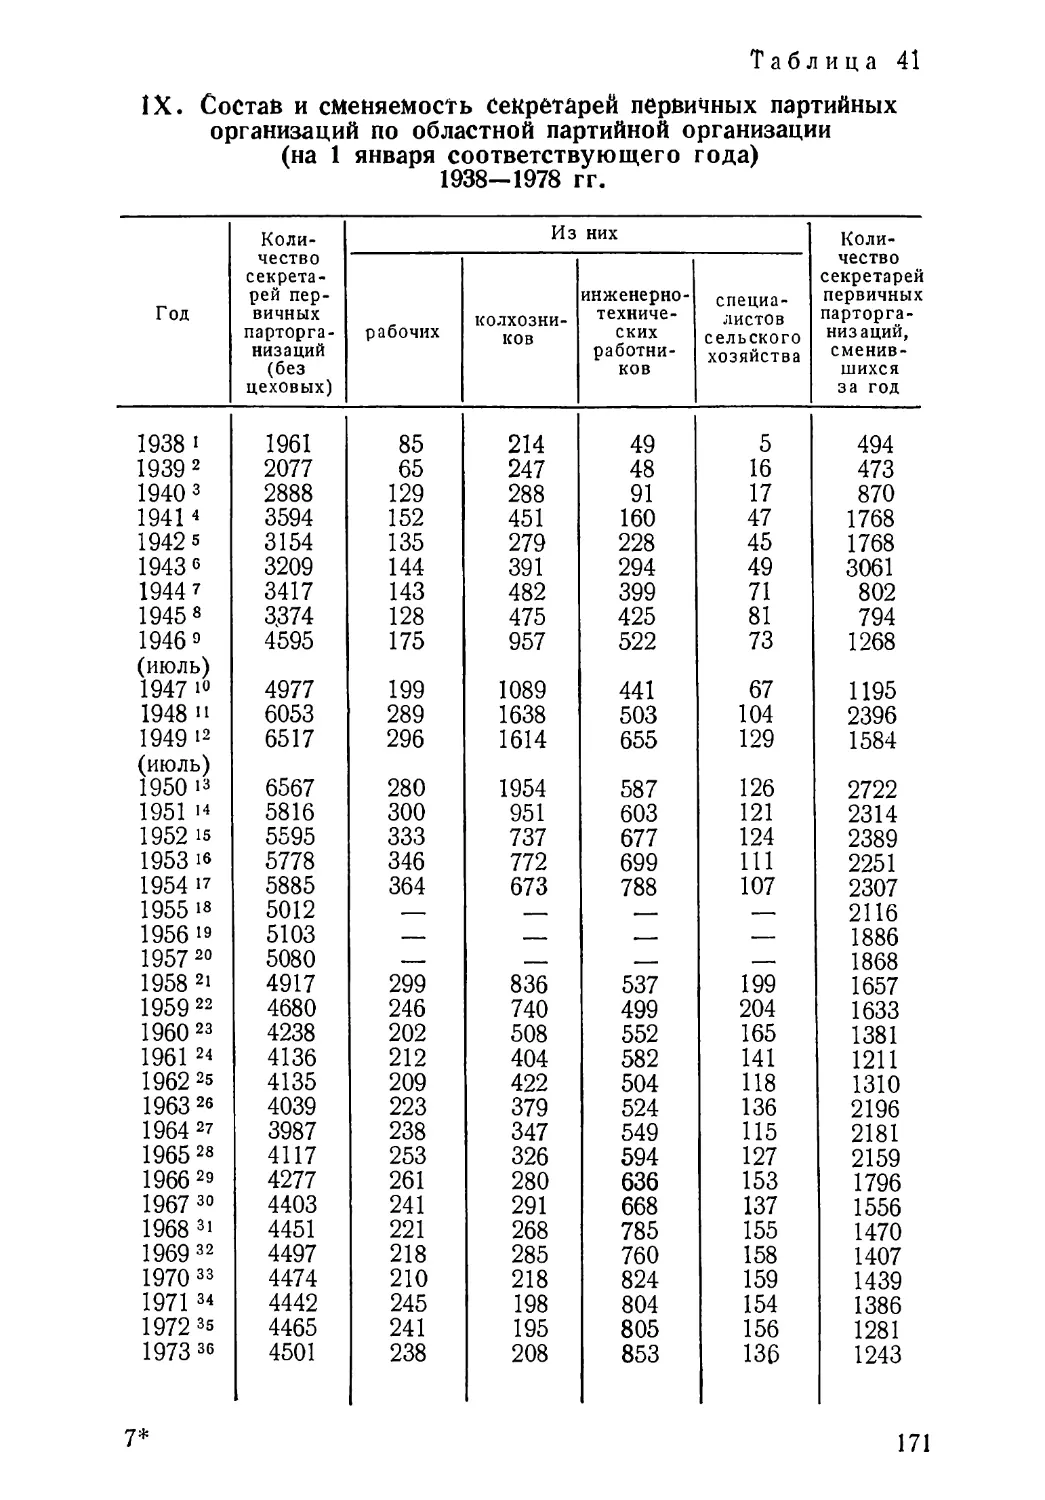 Состав и сменяемость секретарей первичных партийных организаций 1938—1978 гг. Таблица 41